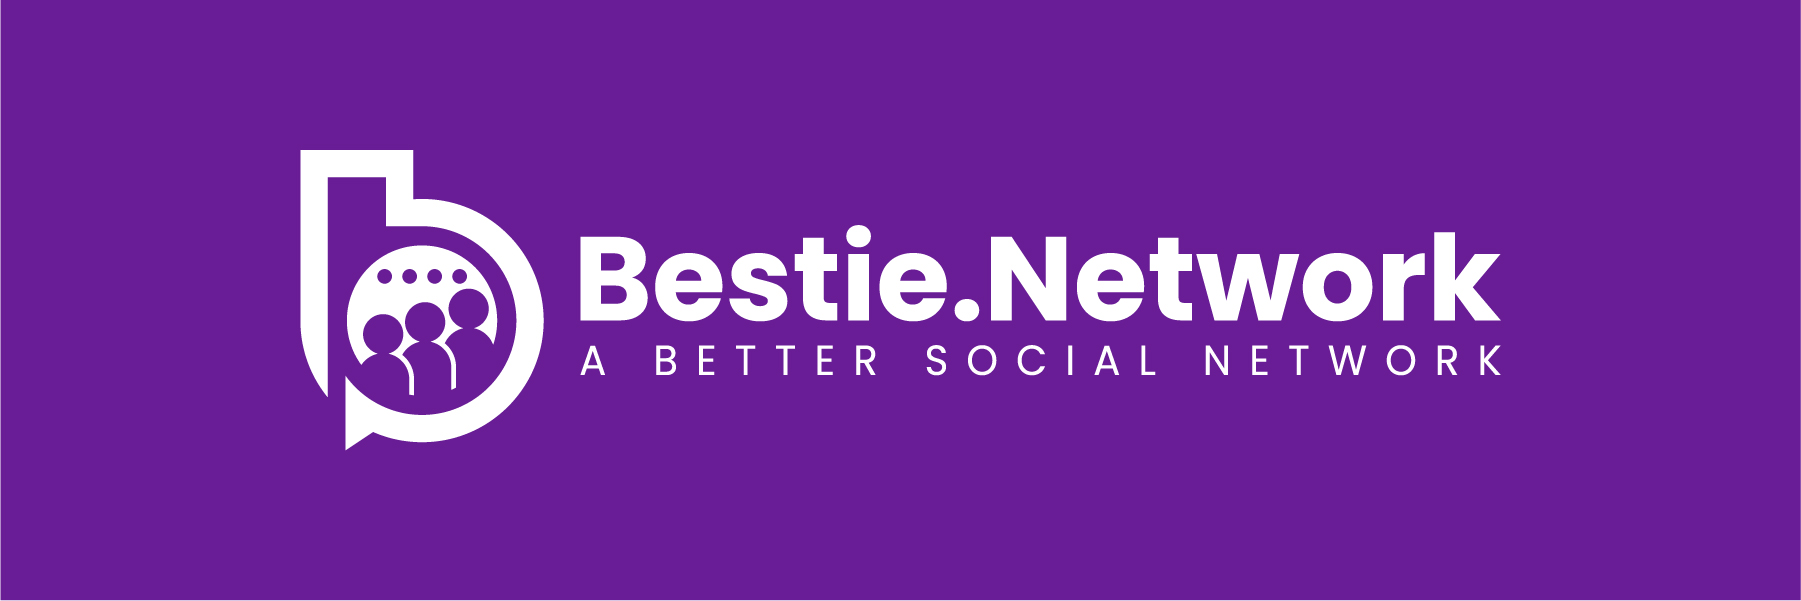 Bestie.Network Logo